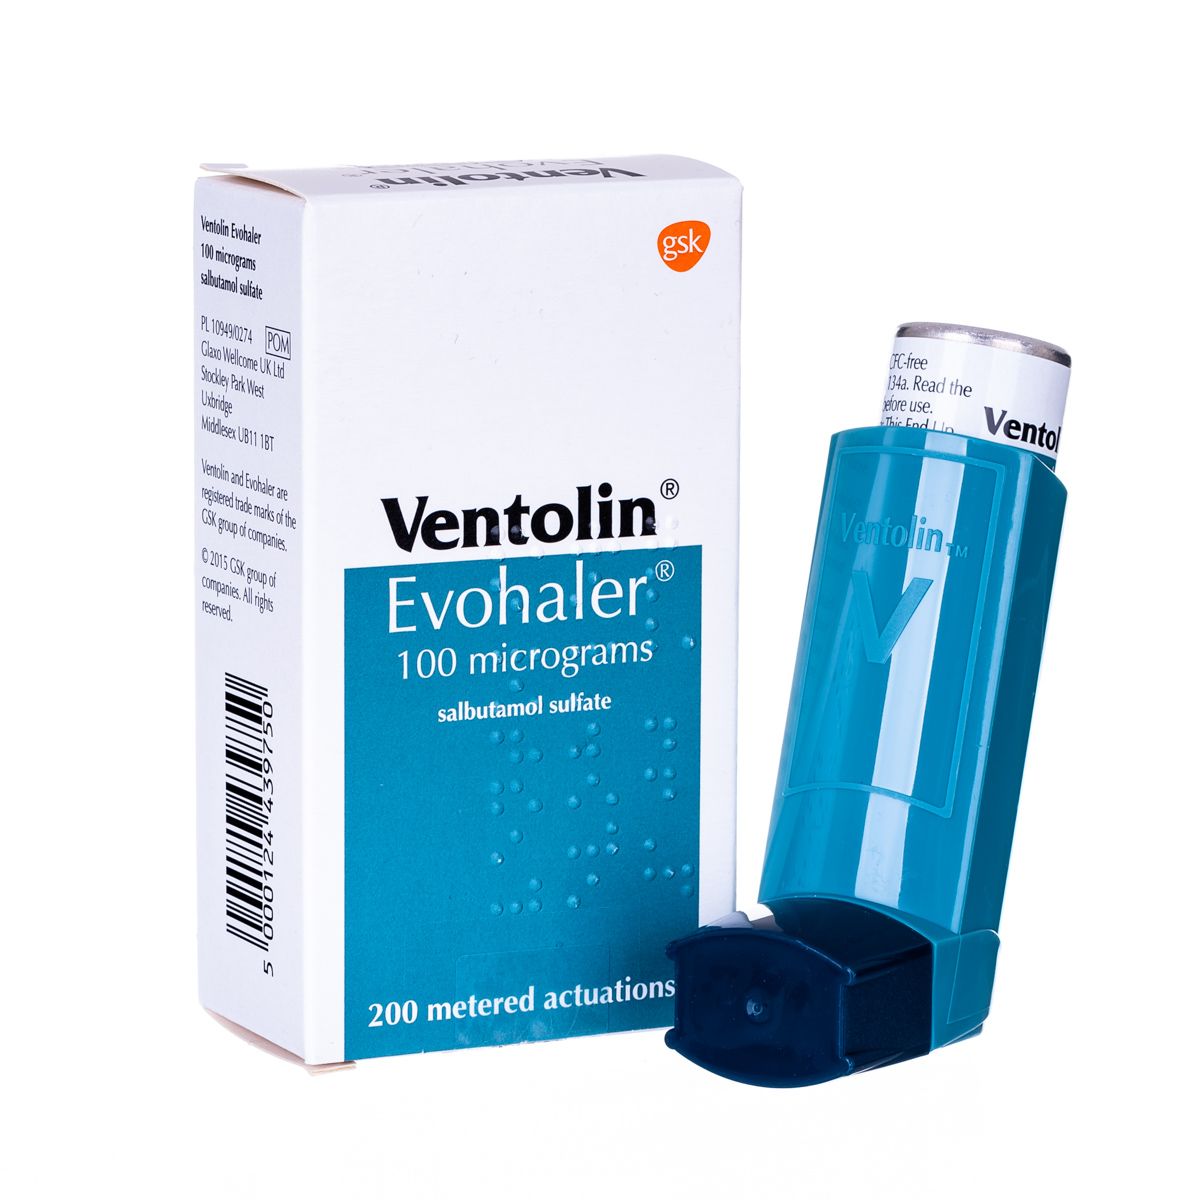 Ventolin inhaler to buy online